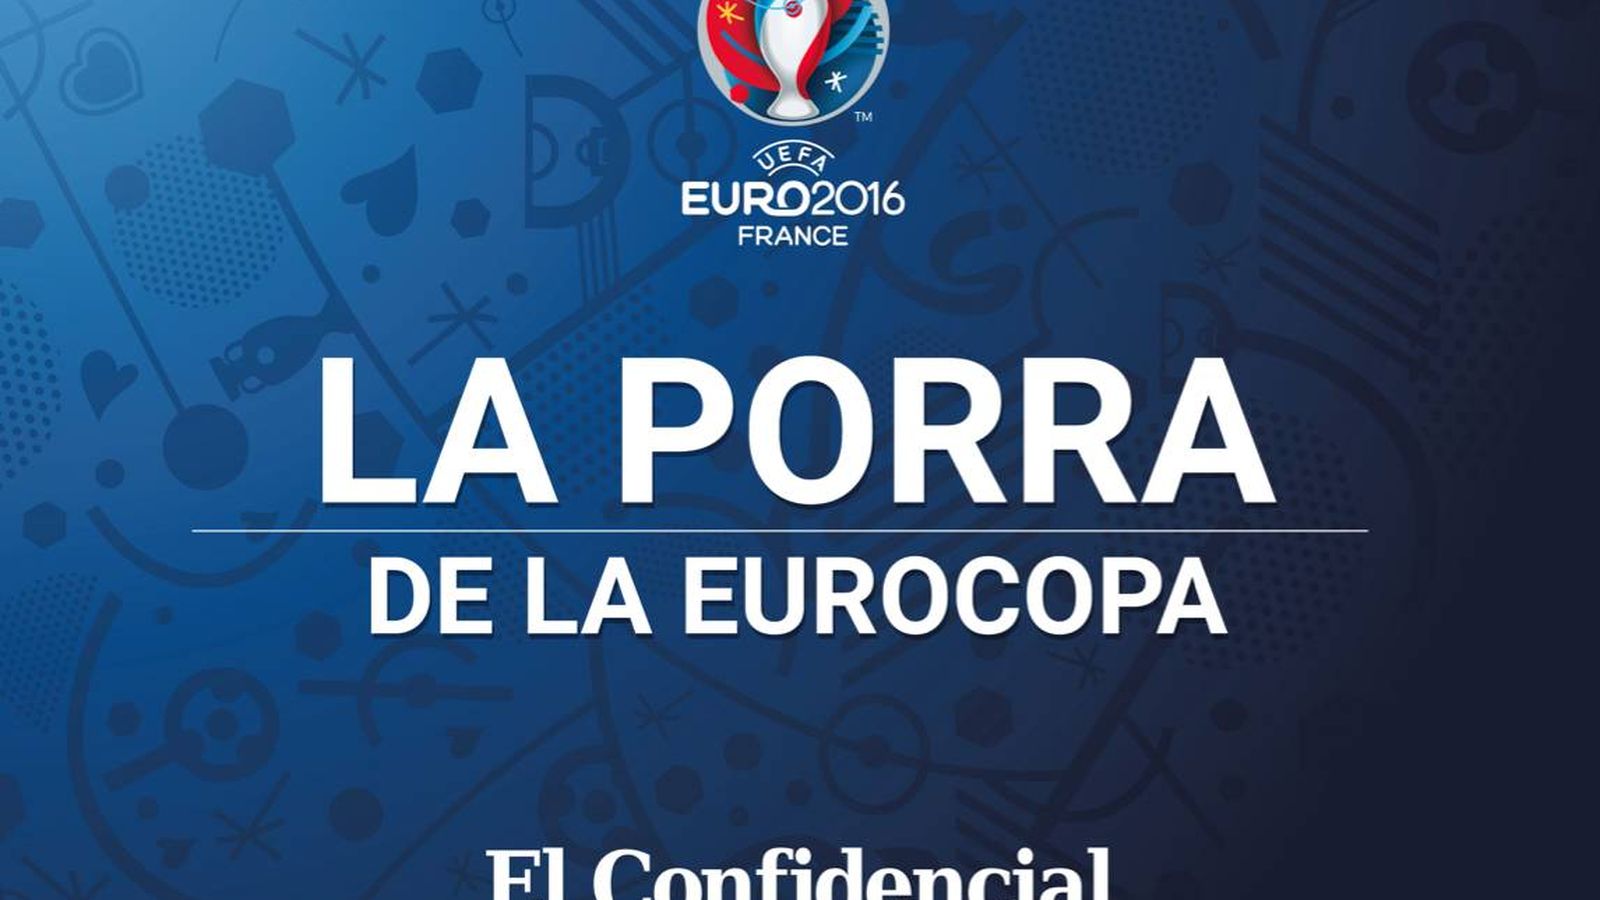 Foto: Porra de la Eurocopa 2016 de El Confidencial (EC)